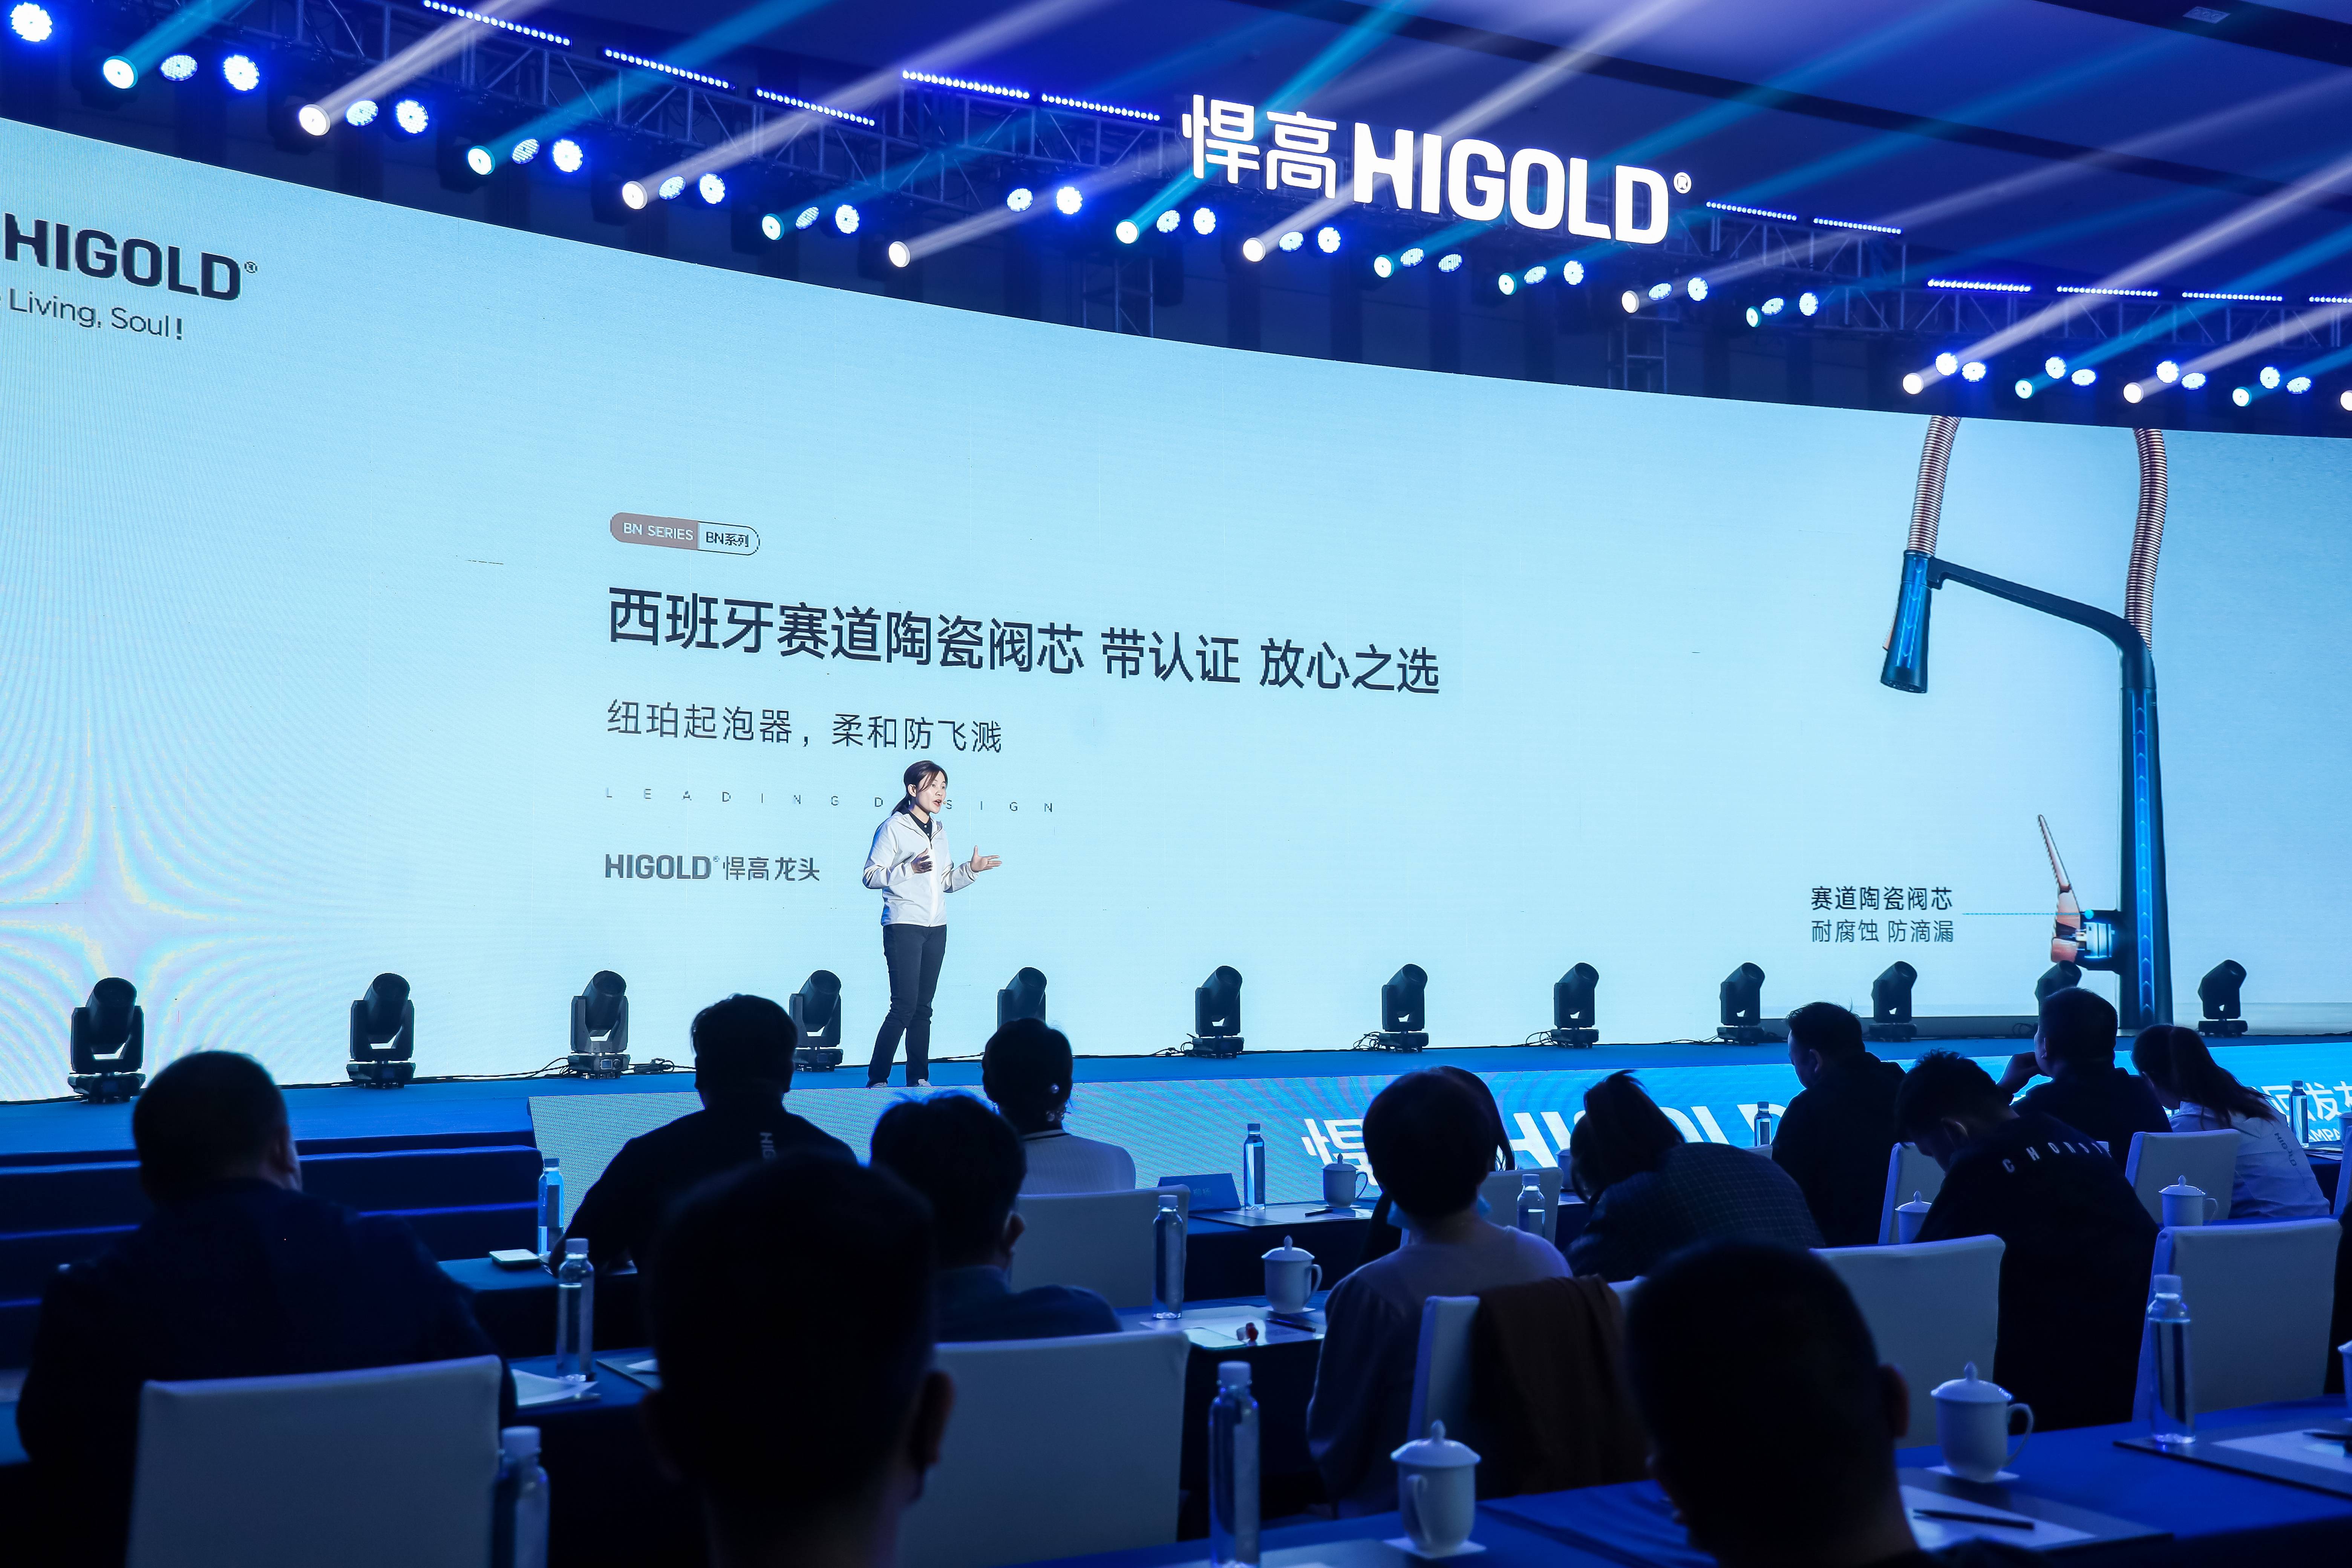 Apertura dello showroom di Higold Jinhua e conferenza sul lancio di nuovi prodotti